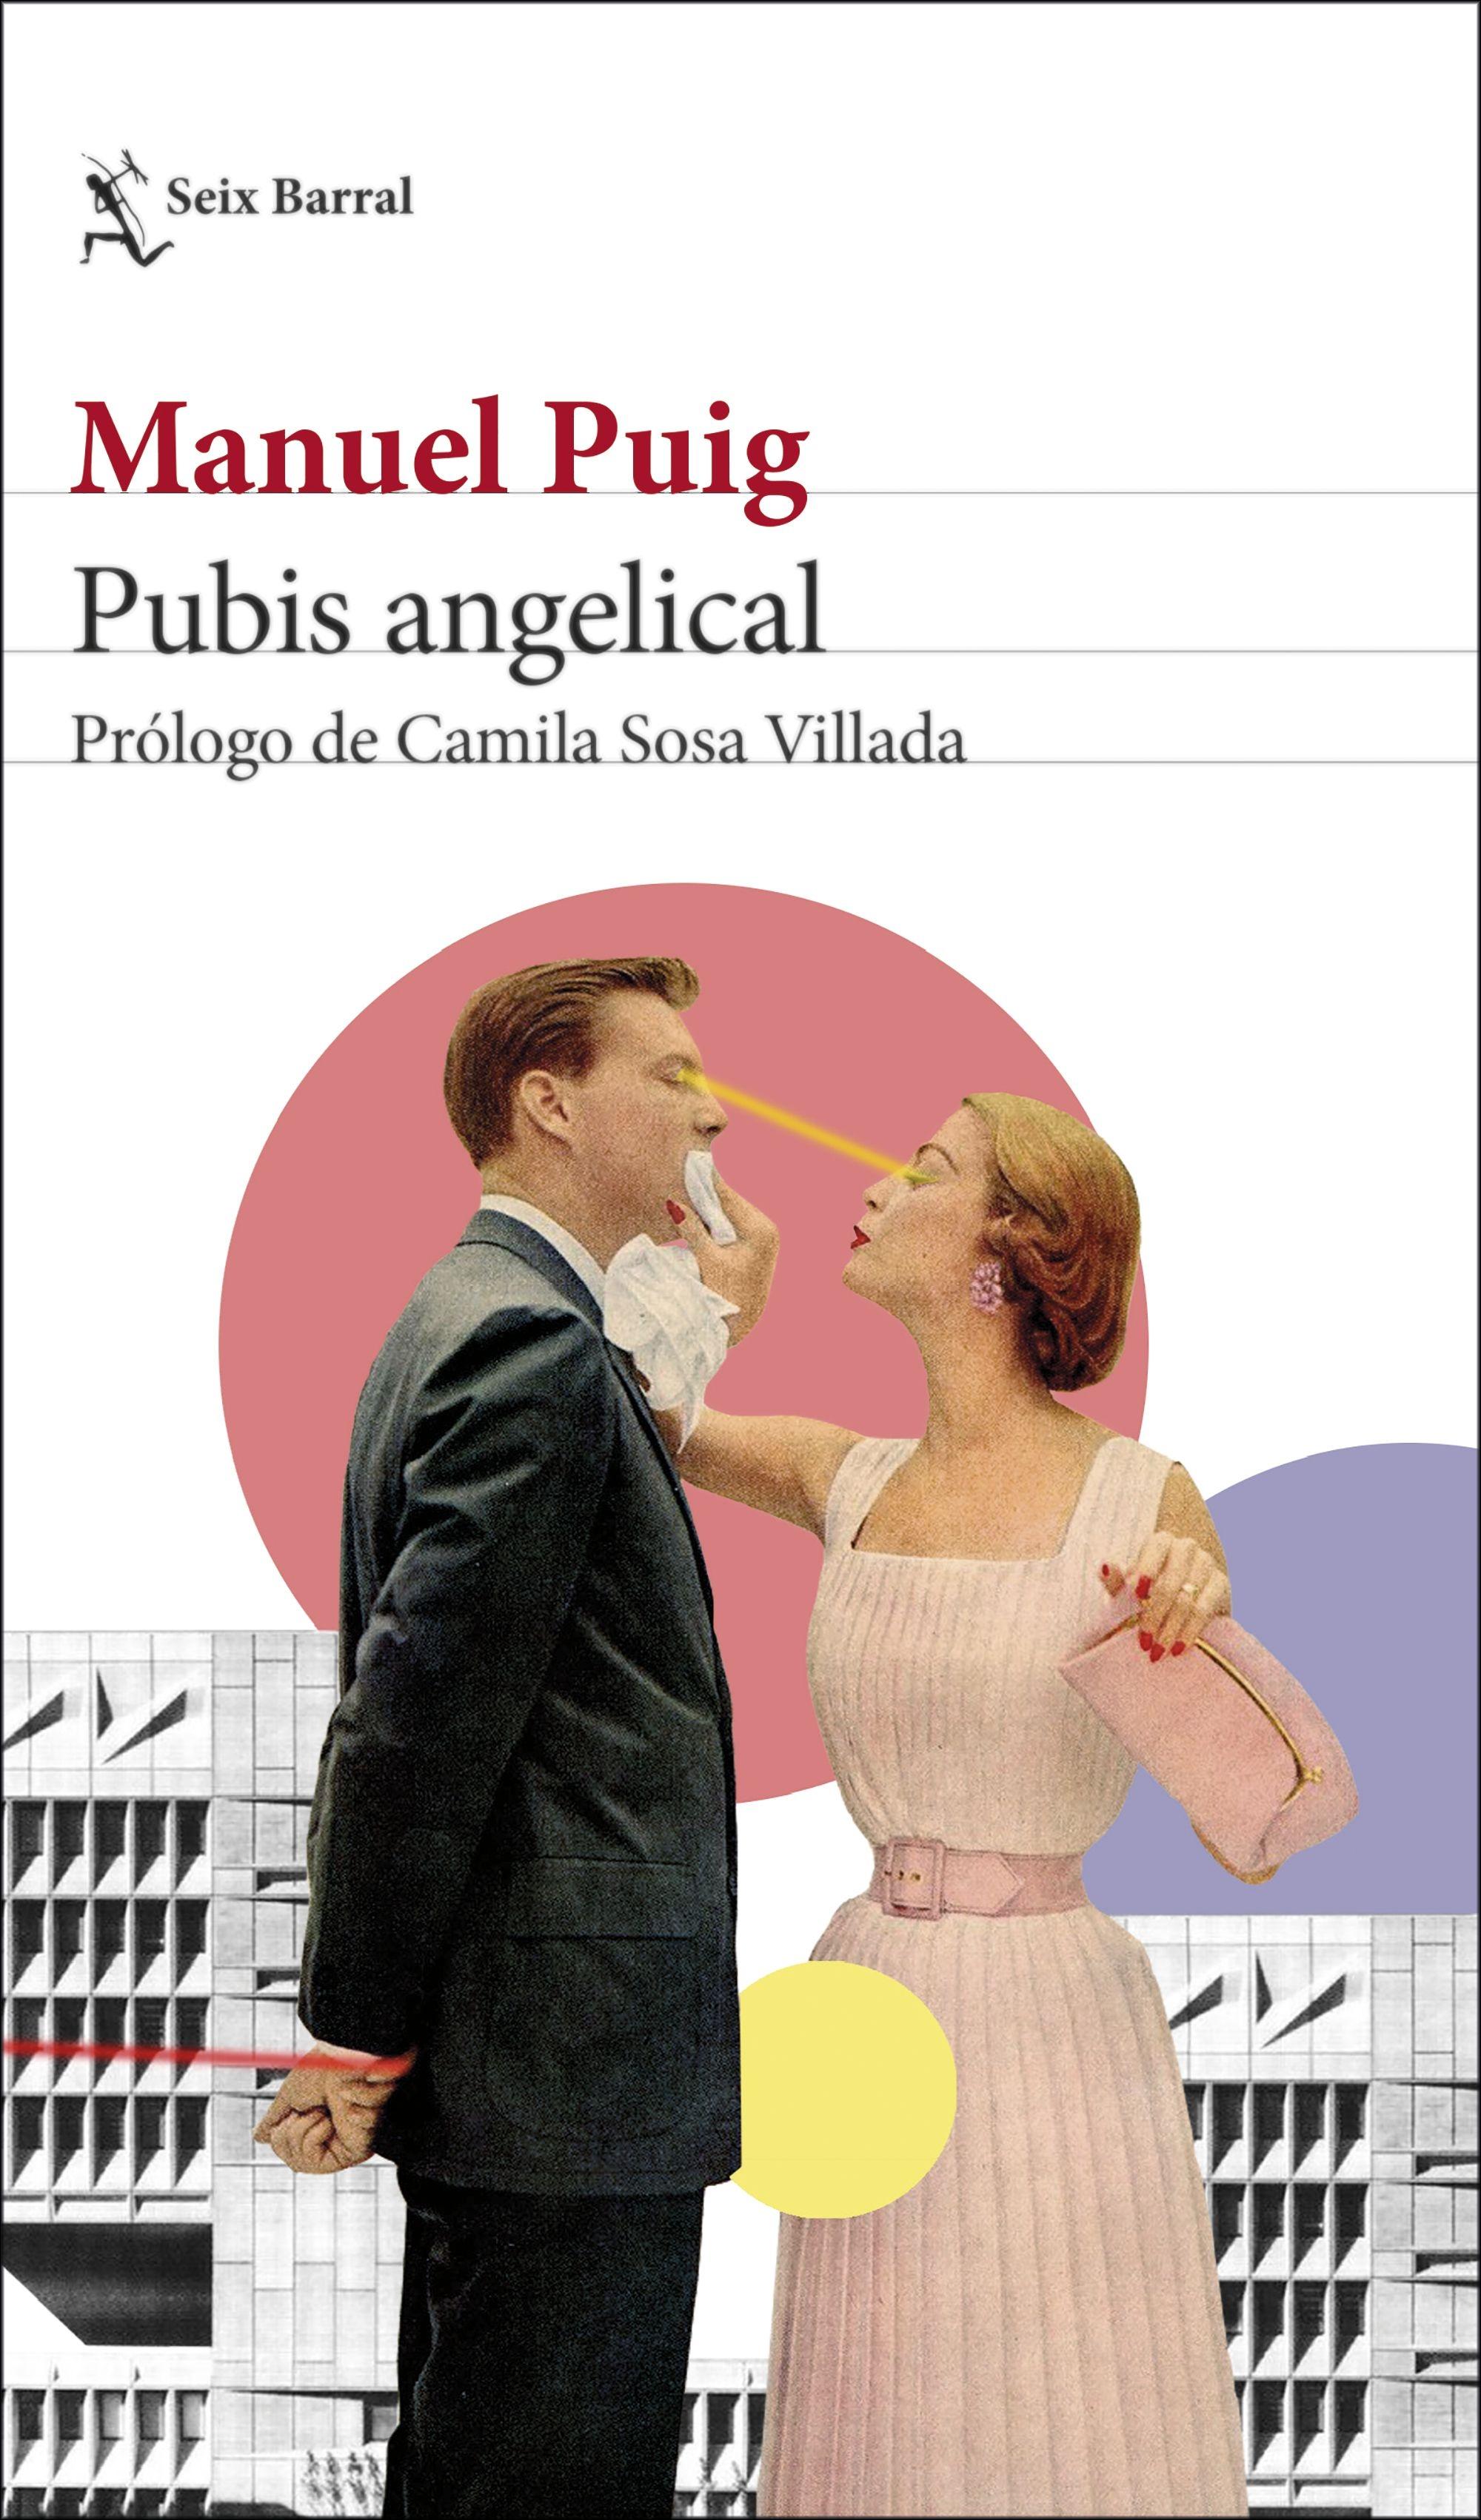 Pubis Angelical "Prólogo de Camila Sosa Villada". 